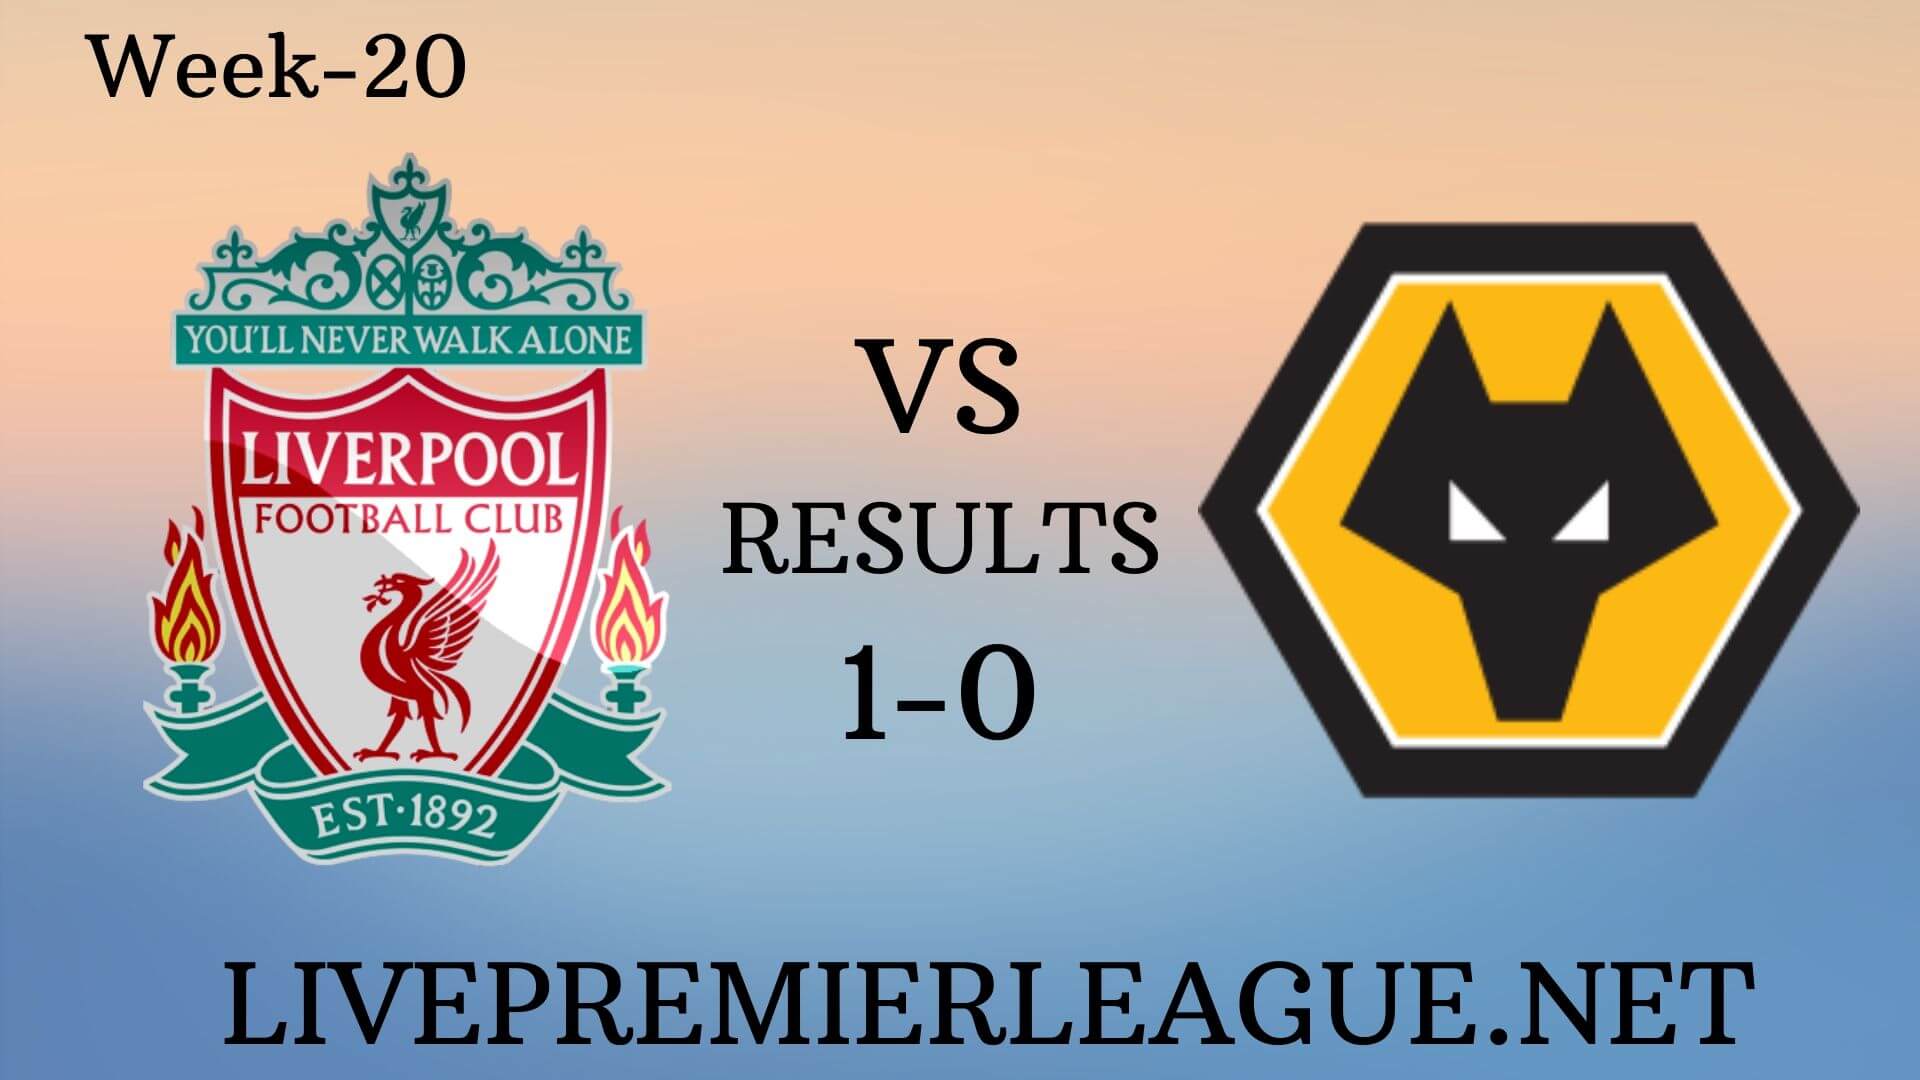 Liverpool Vs Wolverhampton Wanderers | Week 20 Results 2019